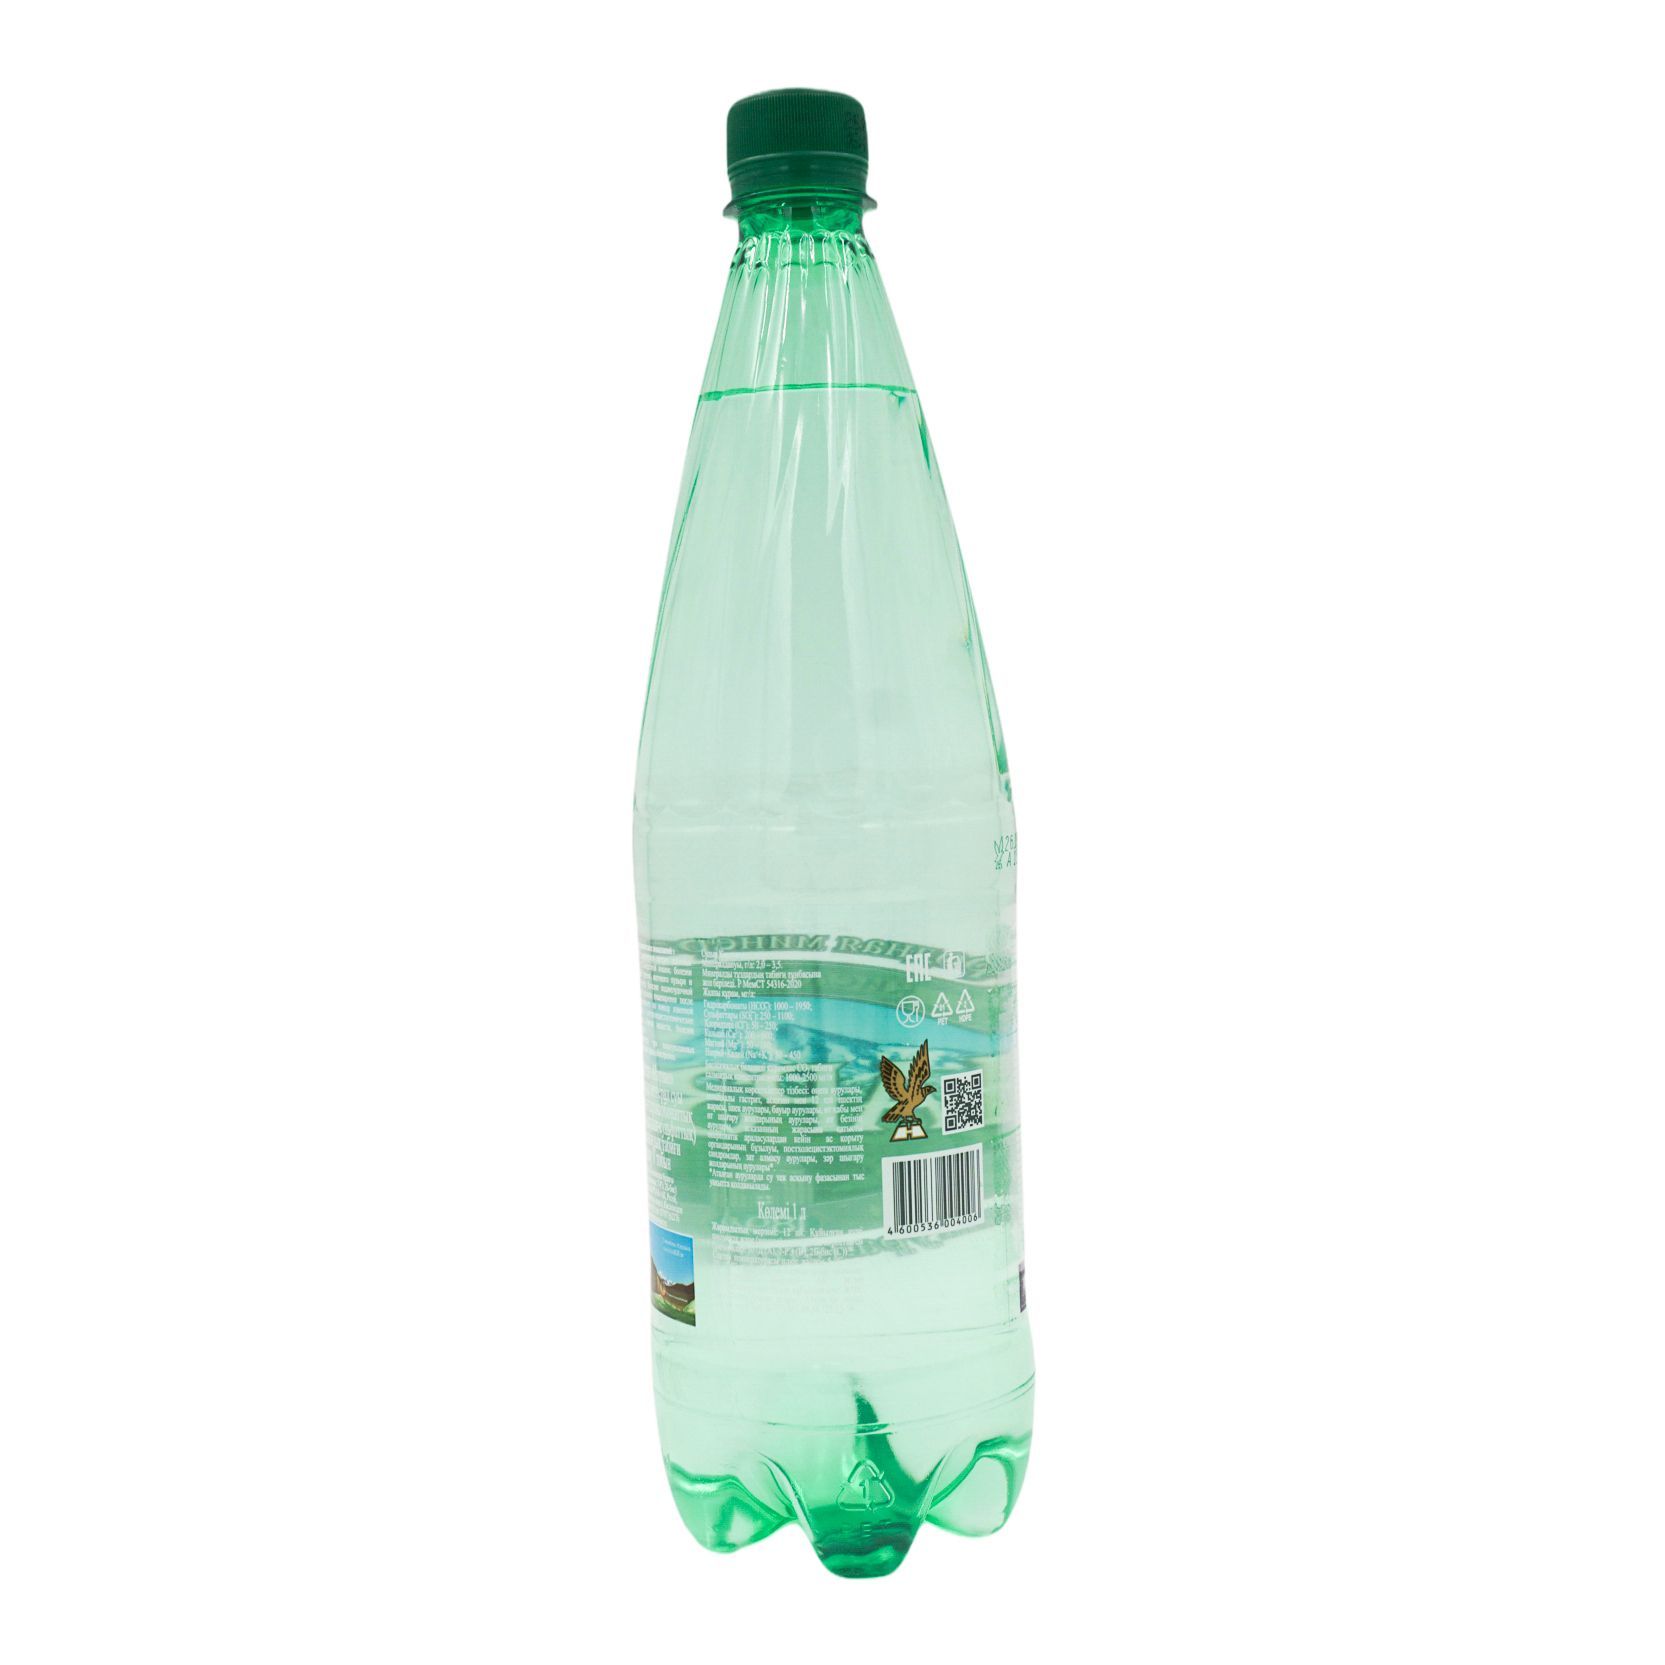 Вода минеральная Нарзан питьевая натуральной газации (Россия) 1.5l. Целебная газированная вода